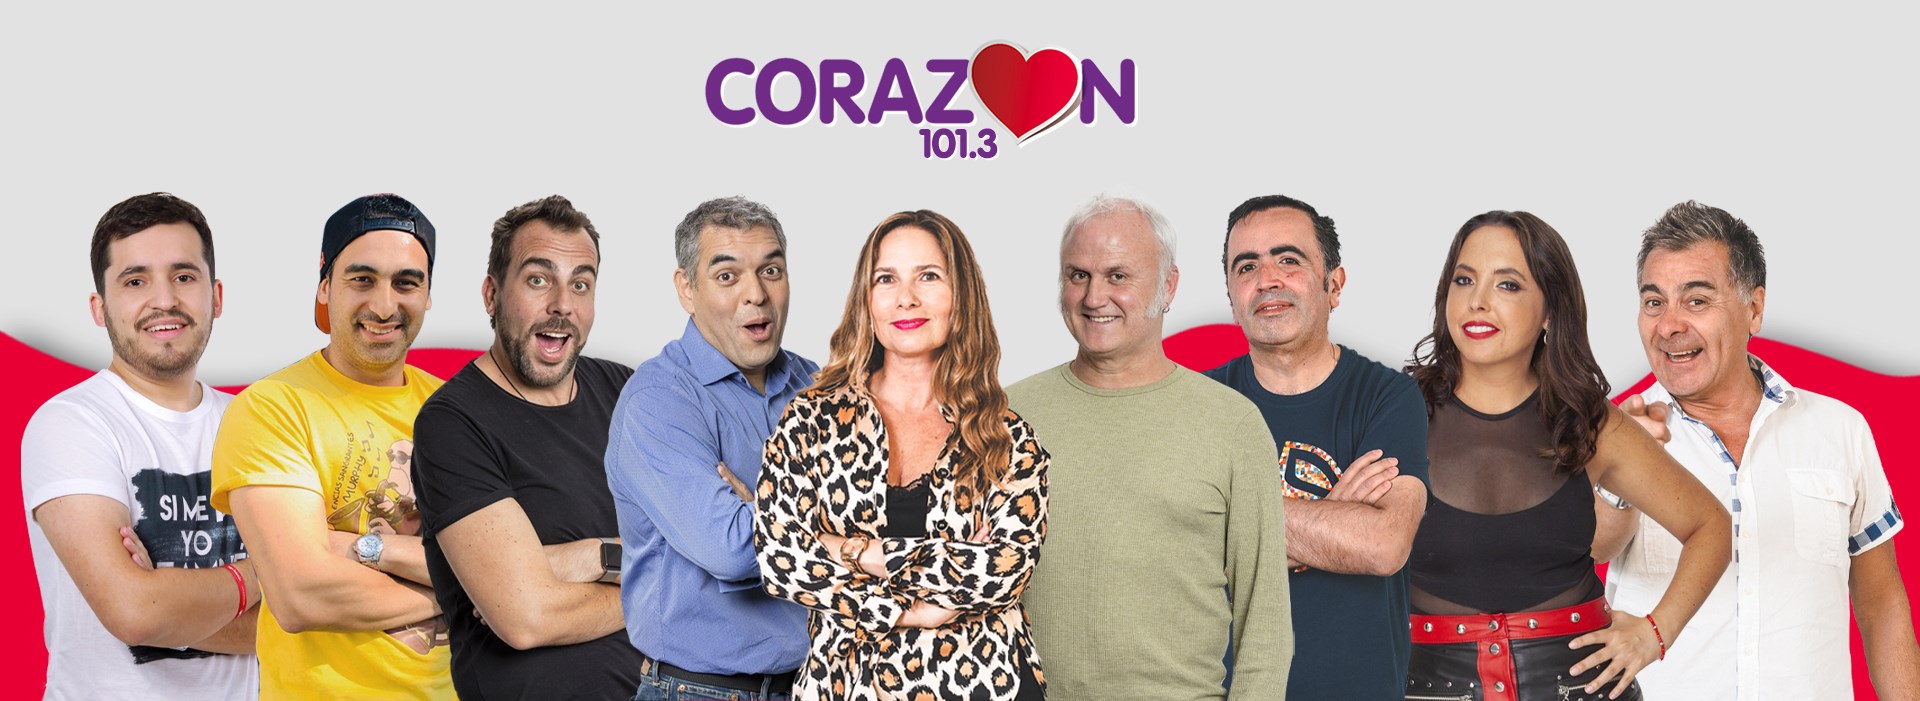 Cuáles son las frecuencias de radio Corazón en todo Chile? — Corazón